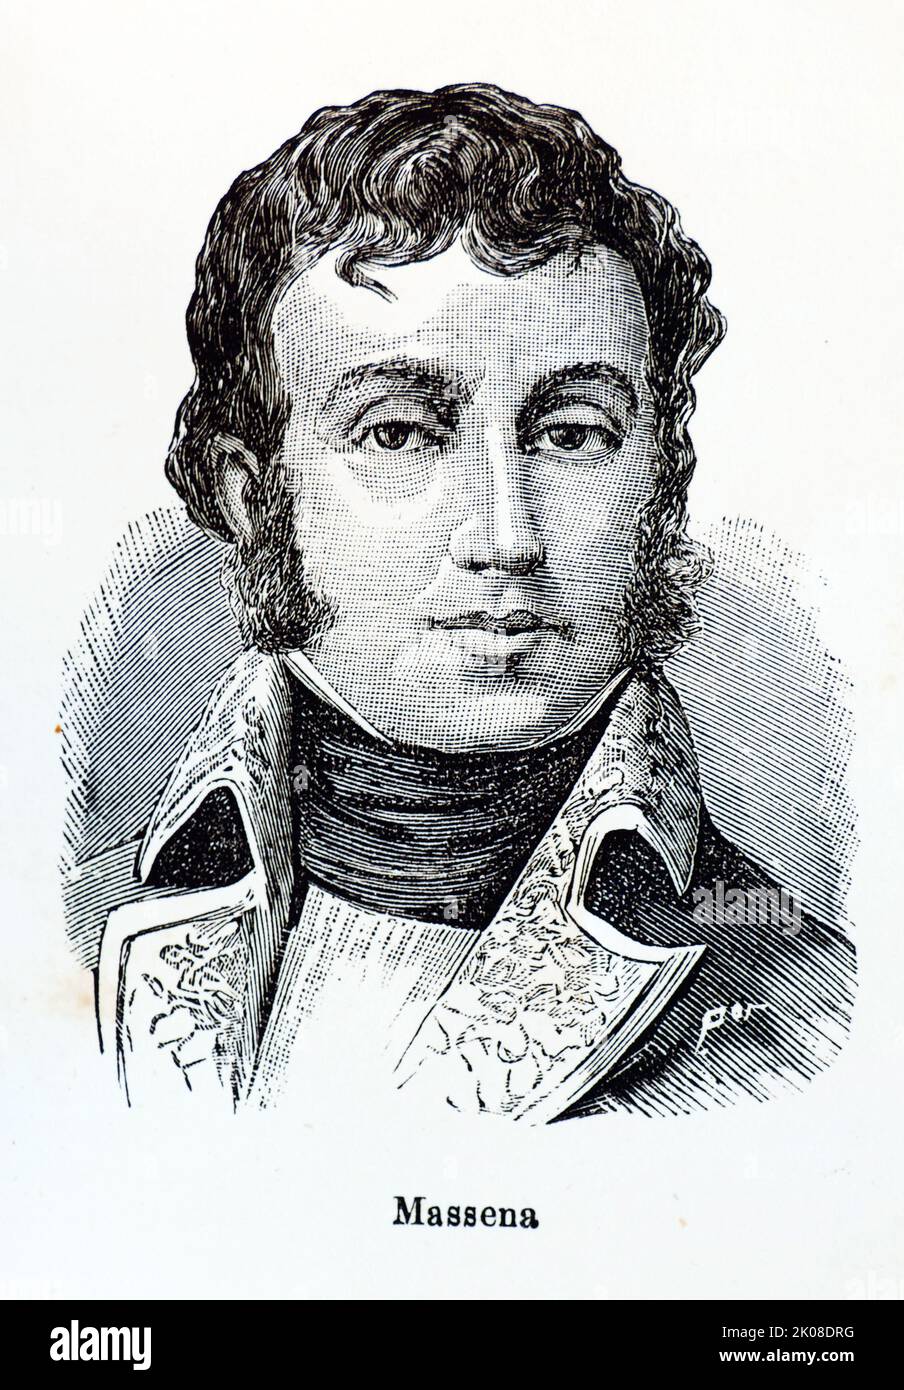 André Massena, prince d'Essling, duc de Rivoli (né Andrea Massena, 6 mai 1758 - 4 avril 1817) était un commandant militaire français pendant les guerres révolutionnaires françaises et les guerres napoléoniennes. Il était l'un des 18 premiers marécages de l'Empire créés par Napoléon Ier Banque D'Images